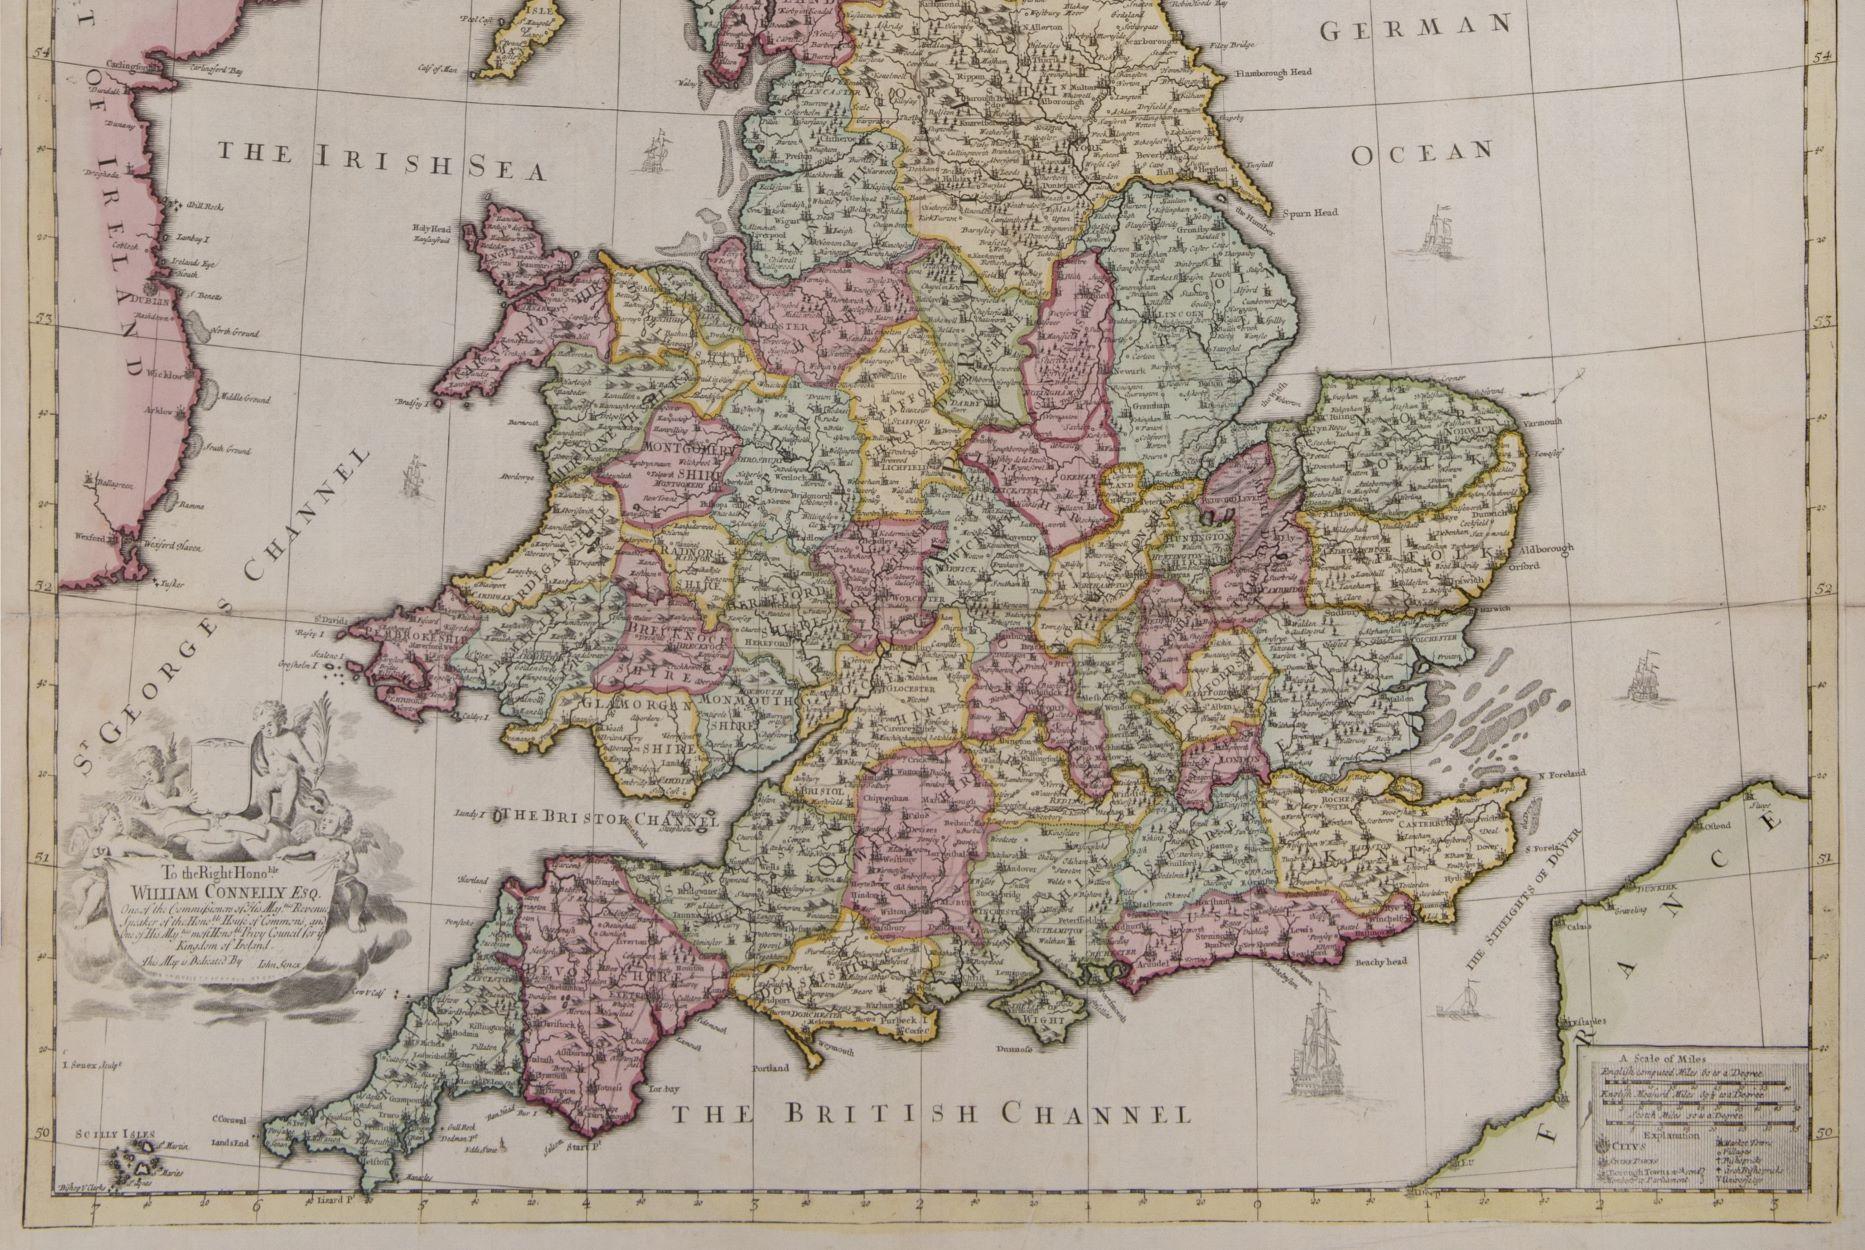 Großbritannien
SENEX, John.
Eine neue Karte von Großbritannien, korrigiert nach den Beobachtungen, die der Royal Society in London mitgeteilt wurden. Von John Senex F.R.S. An den ehrenwerten William Connelly ESQ. Einer der Commissioners of His